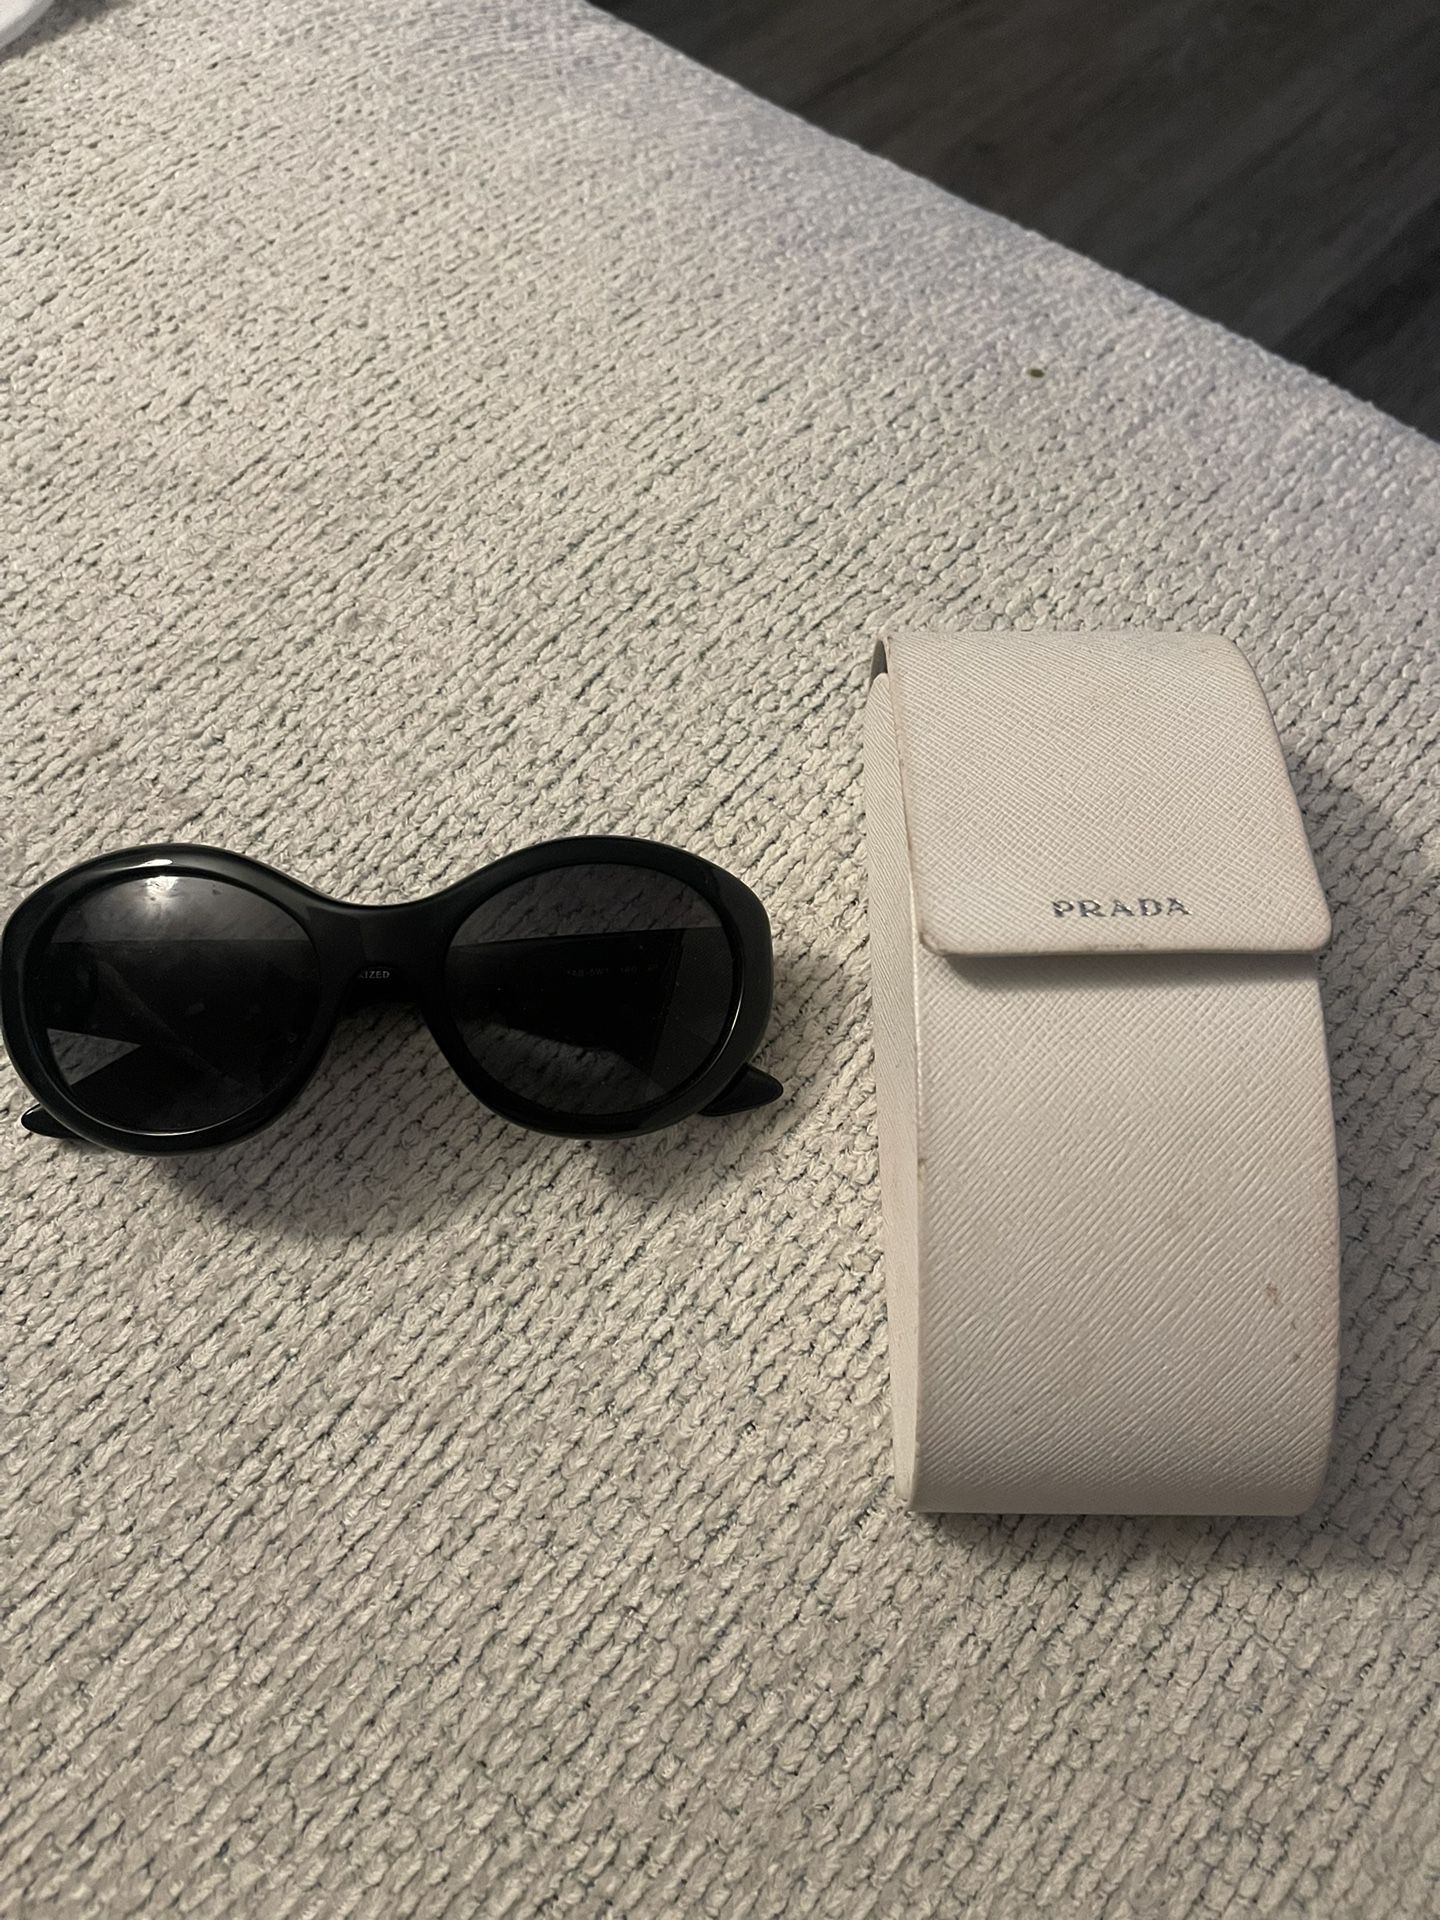 Prada Sunglasses (SPR 30P) - Comes With Box